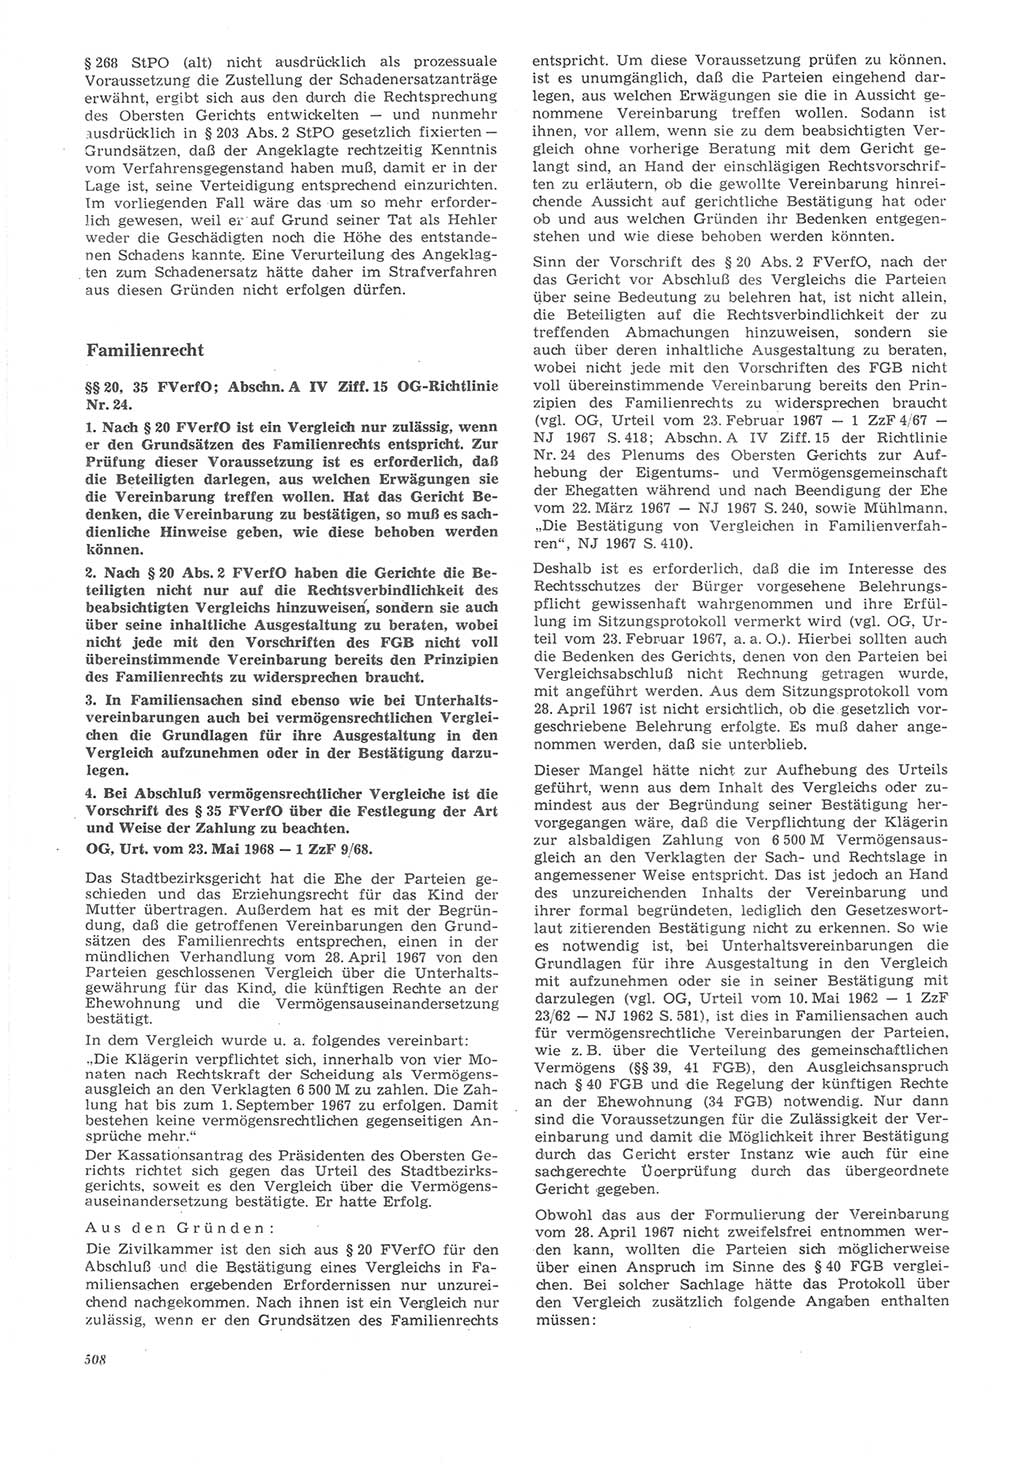 Neue Justiz (NJ), Zeitschrift für Recht und Rechtswissenschaft [Deutsche Demokratische Republik (DDR)], 22. Jahrgang 1968, Seite 508 (NJ DDR 1968, S. 508)